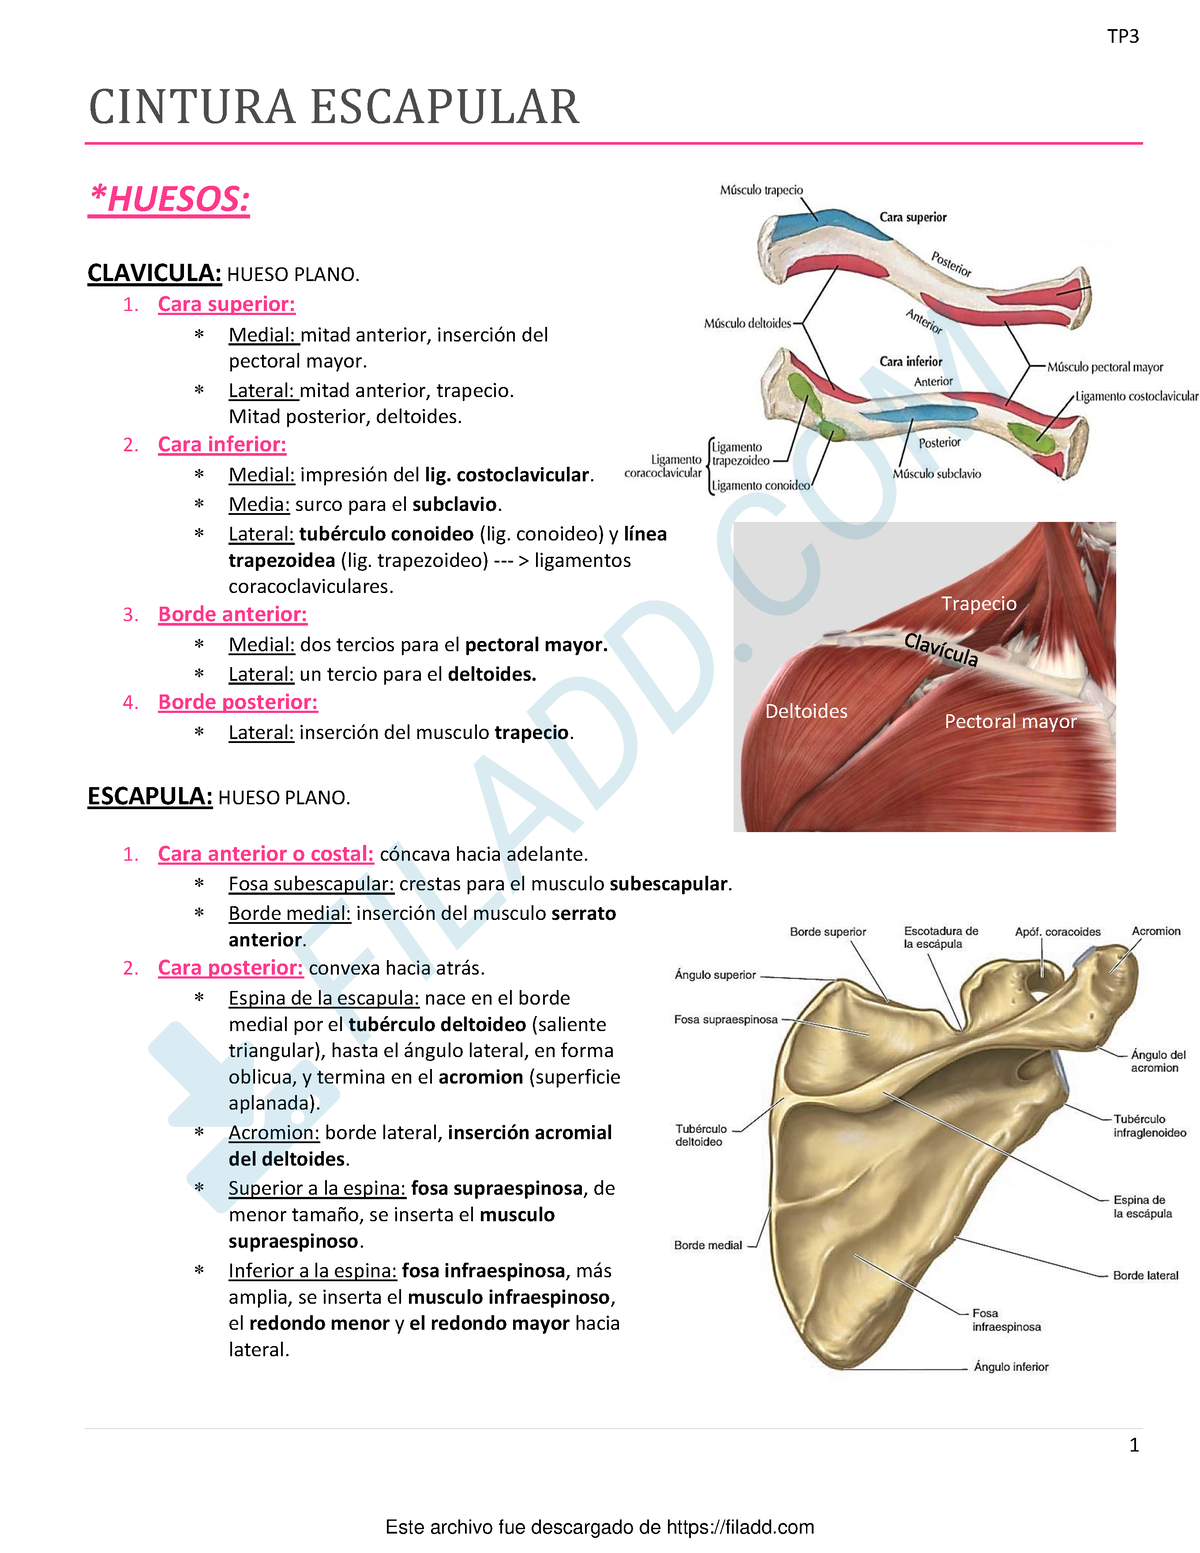 Resumen de Cintura Escapular - Anatomia Cat2 (biblio: Latarjet y